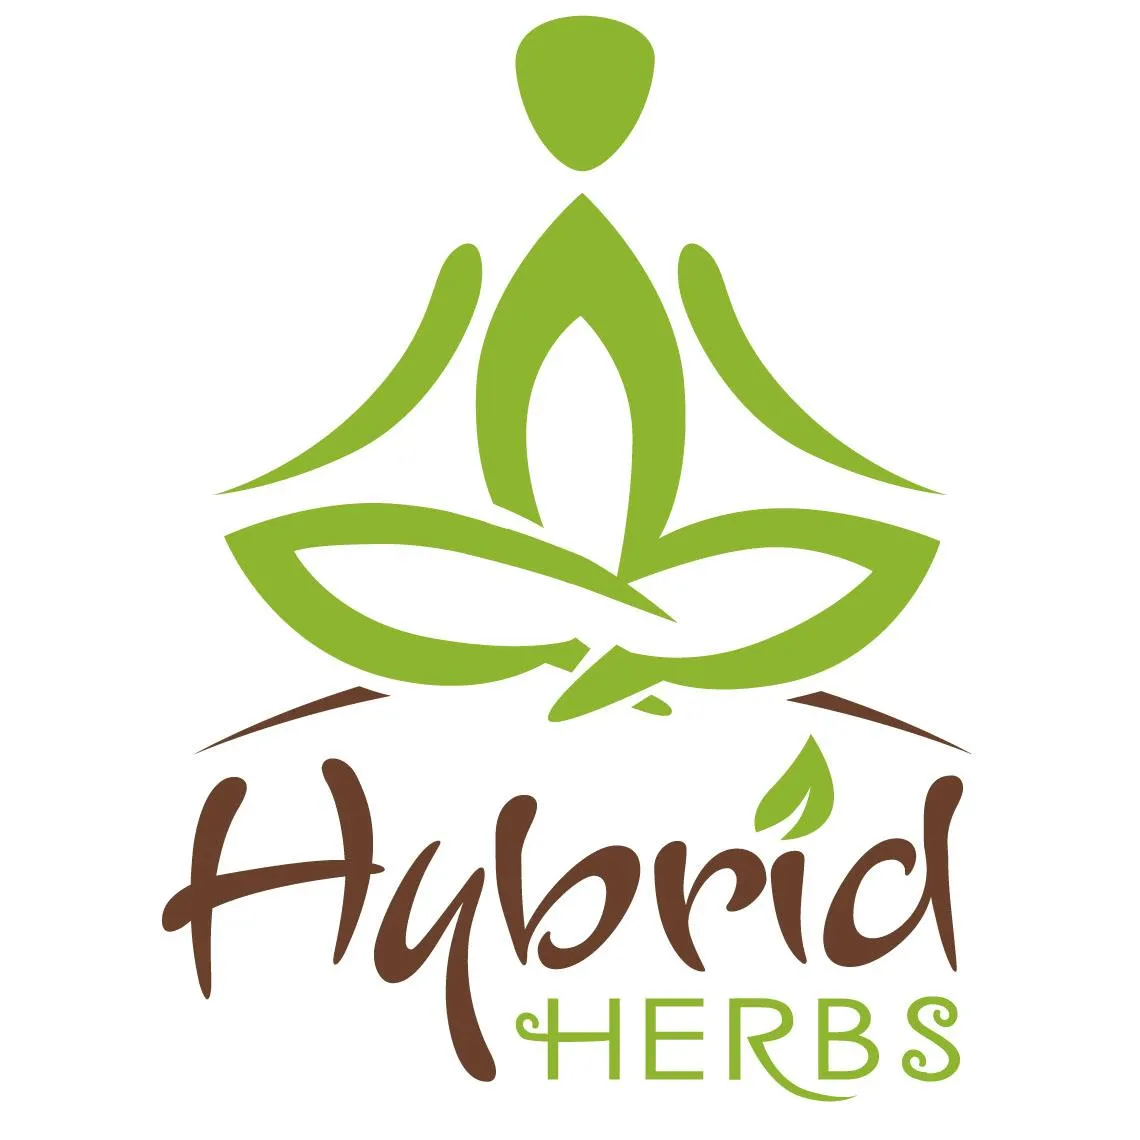  Hybrid Herbs